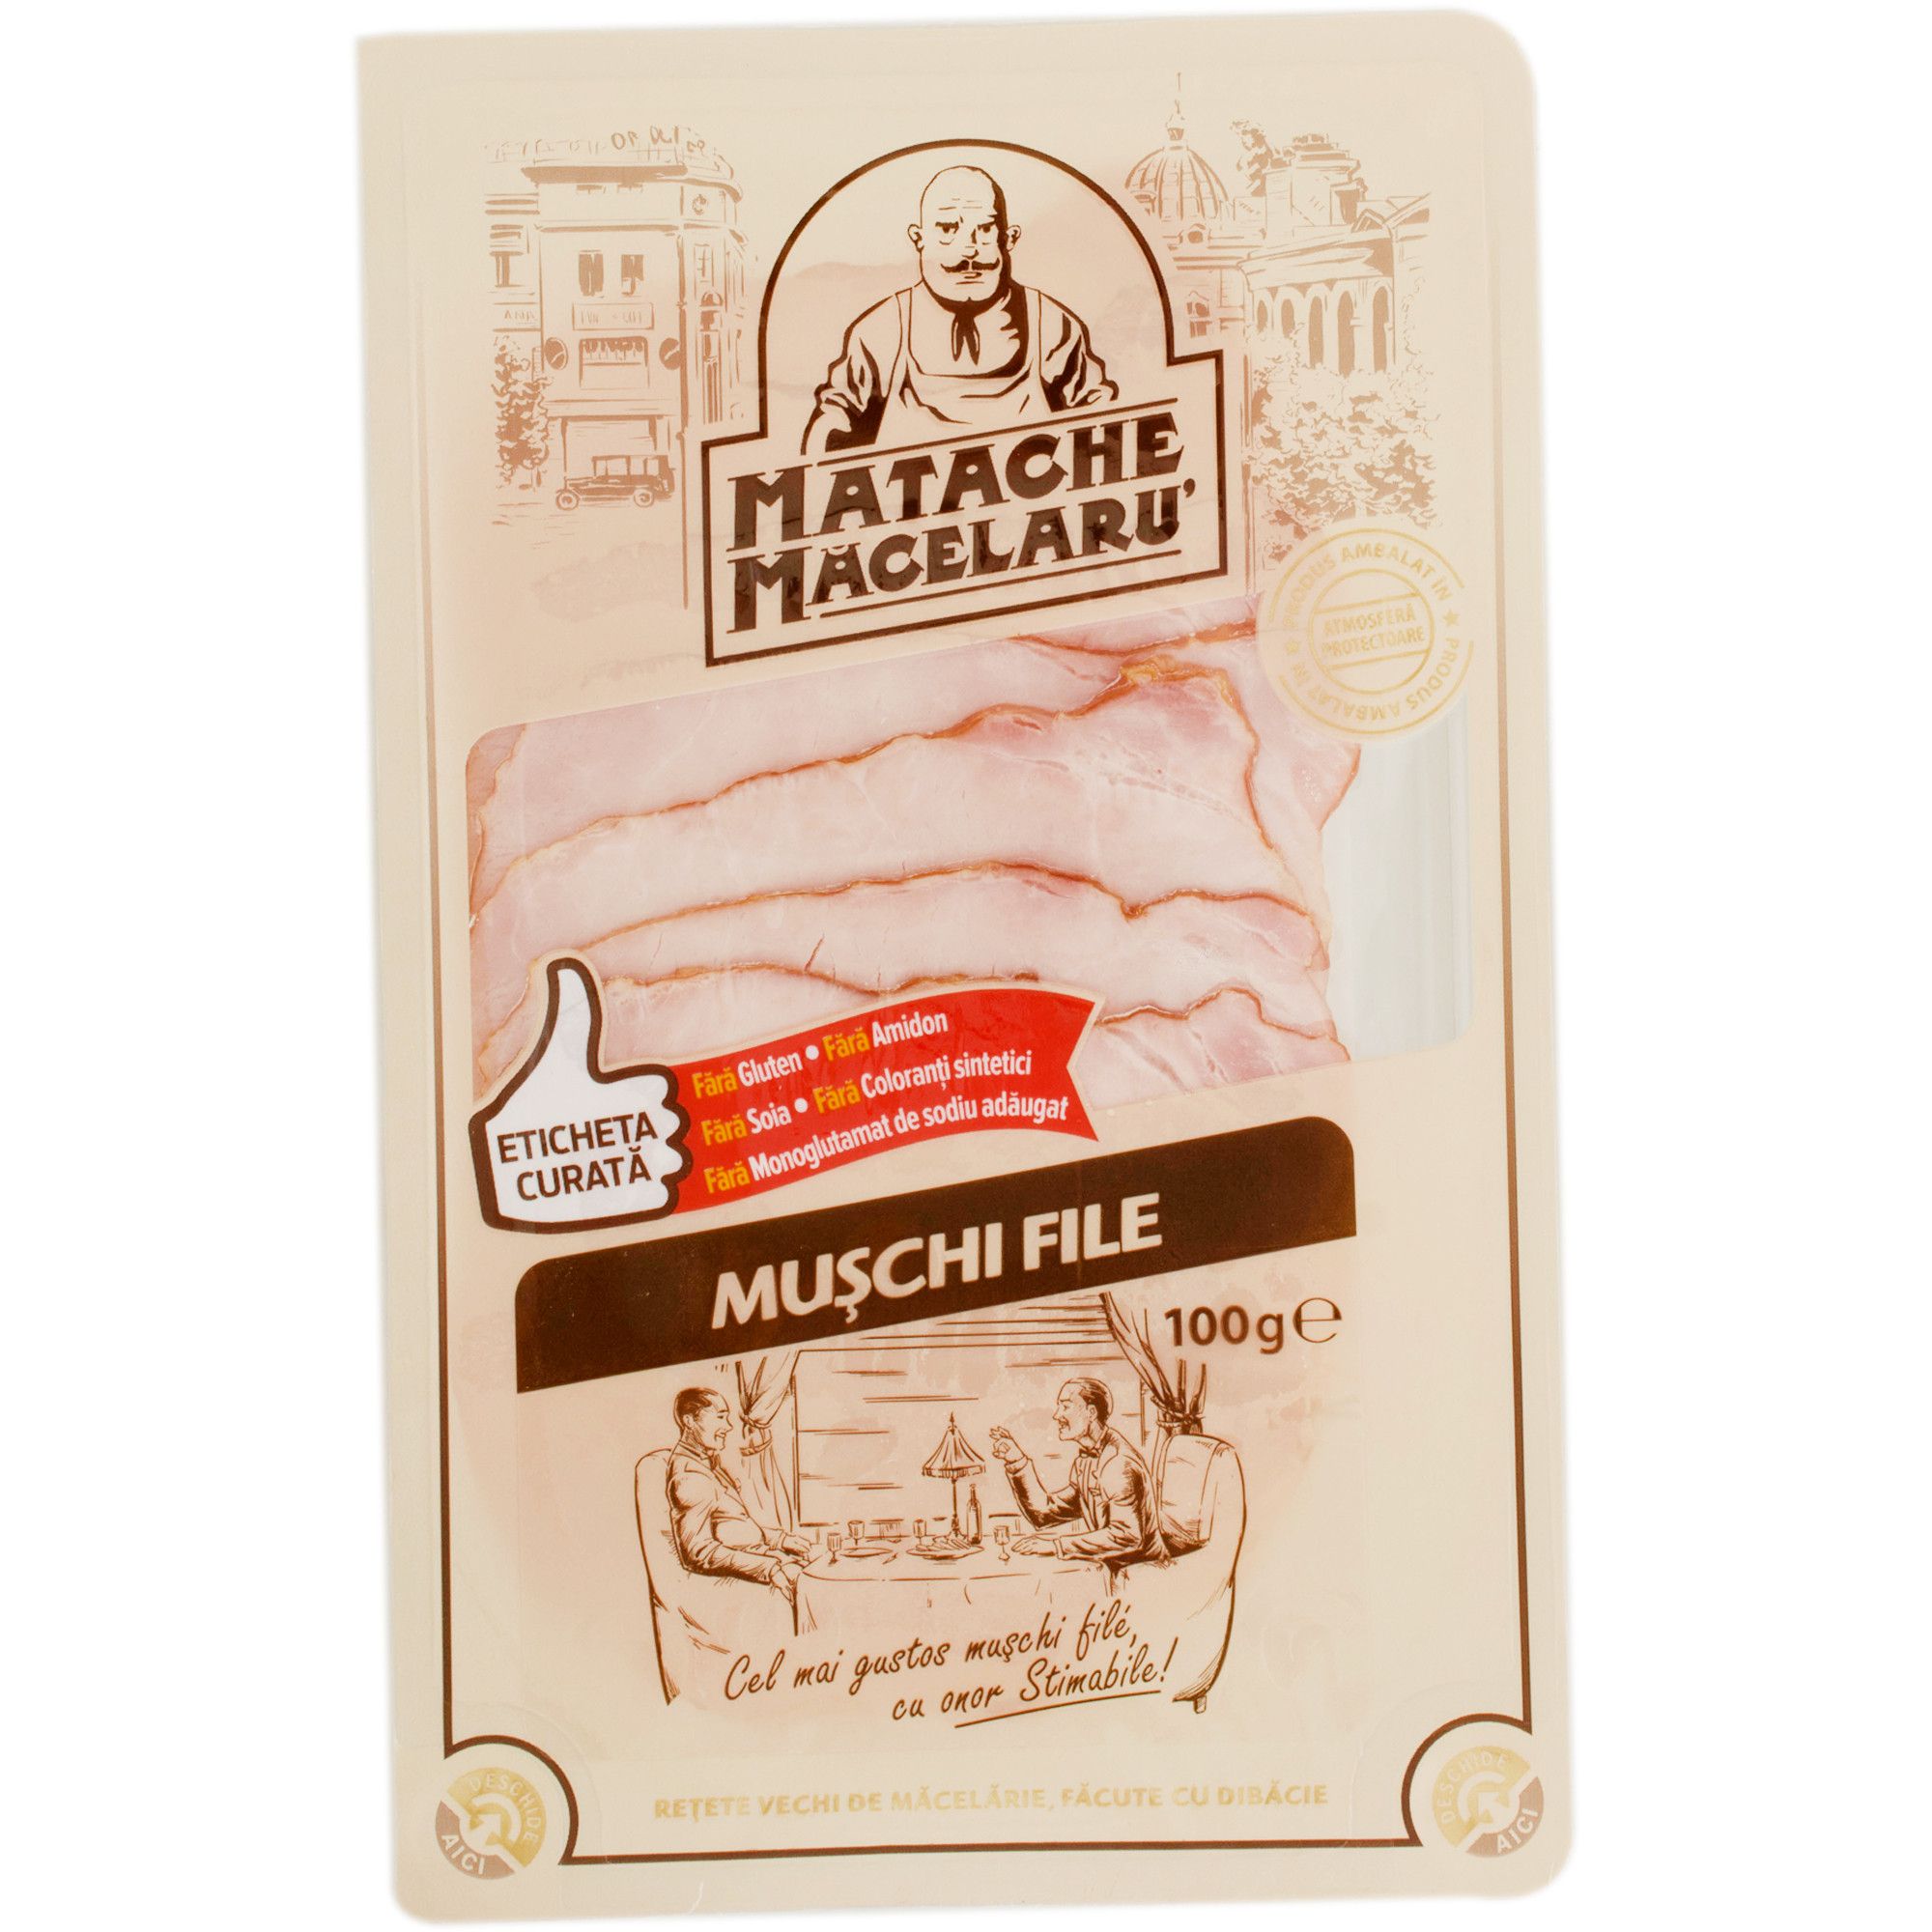 Muschi file 100g Matache Macelaru'